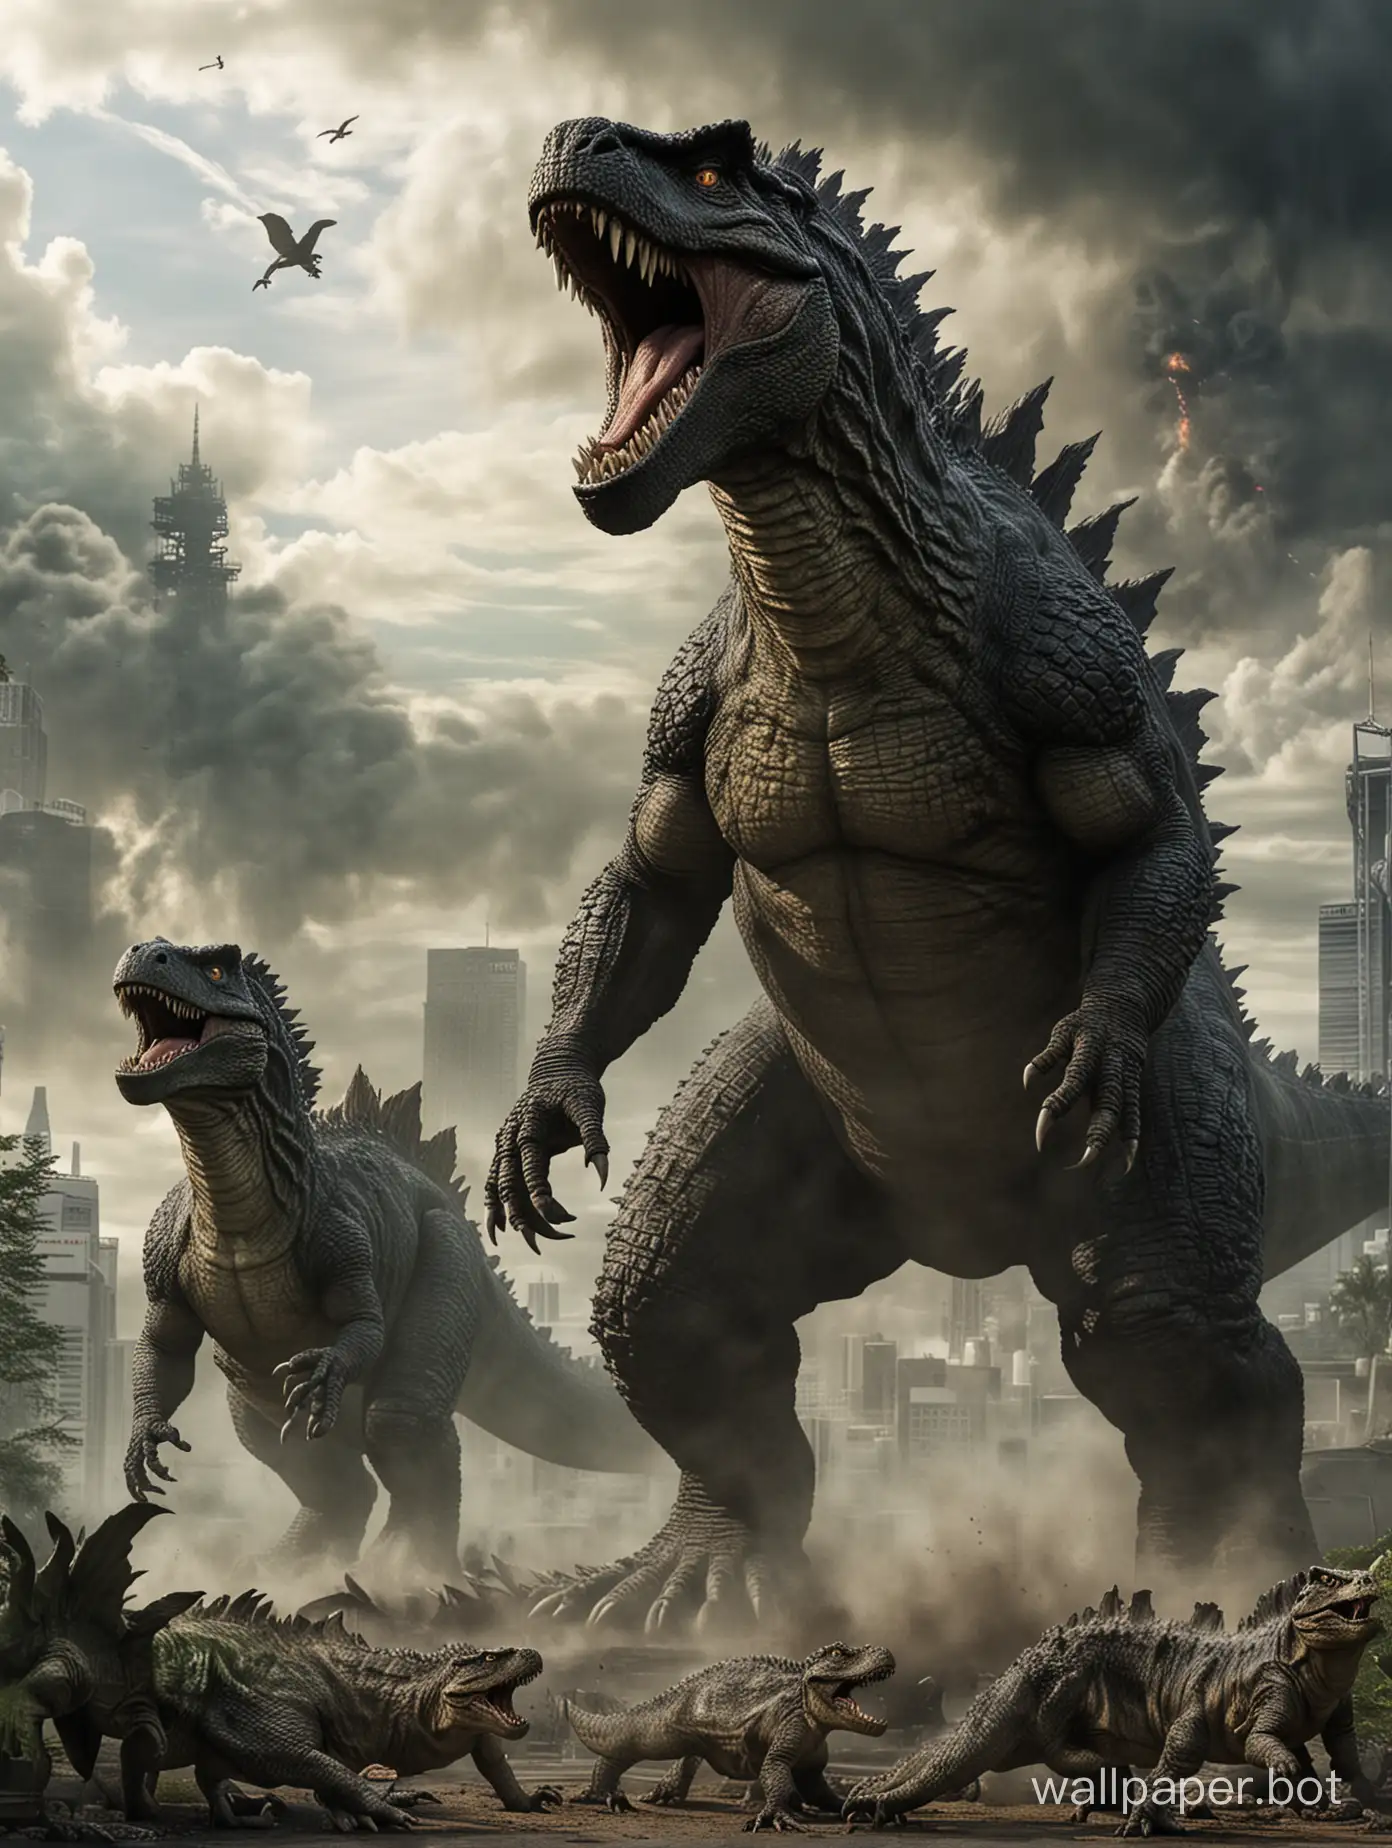 Godzilla from movie godzilla and t-rex from movie jurrasic park.